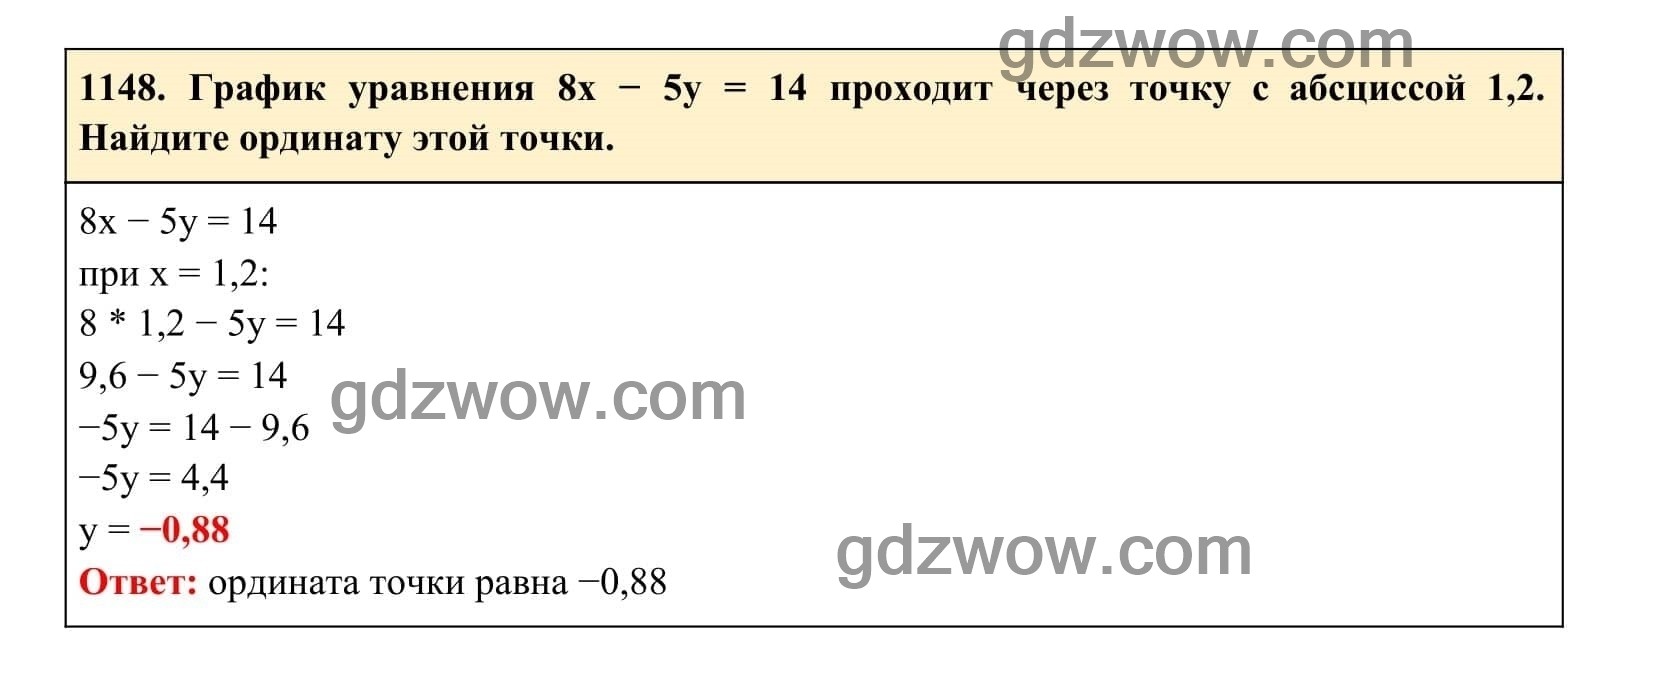 Упражнение 1148 - ГДЗ по Алгебре 7 класс Учебник Макарычев (решебник) - GDZwow